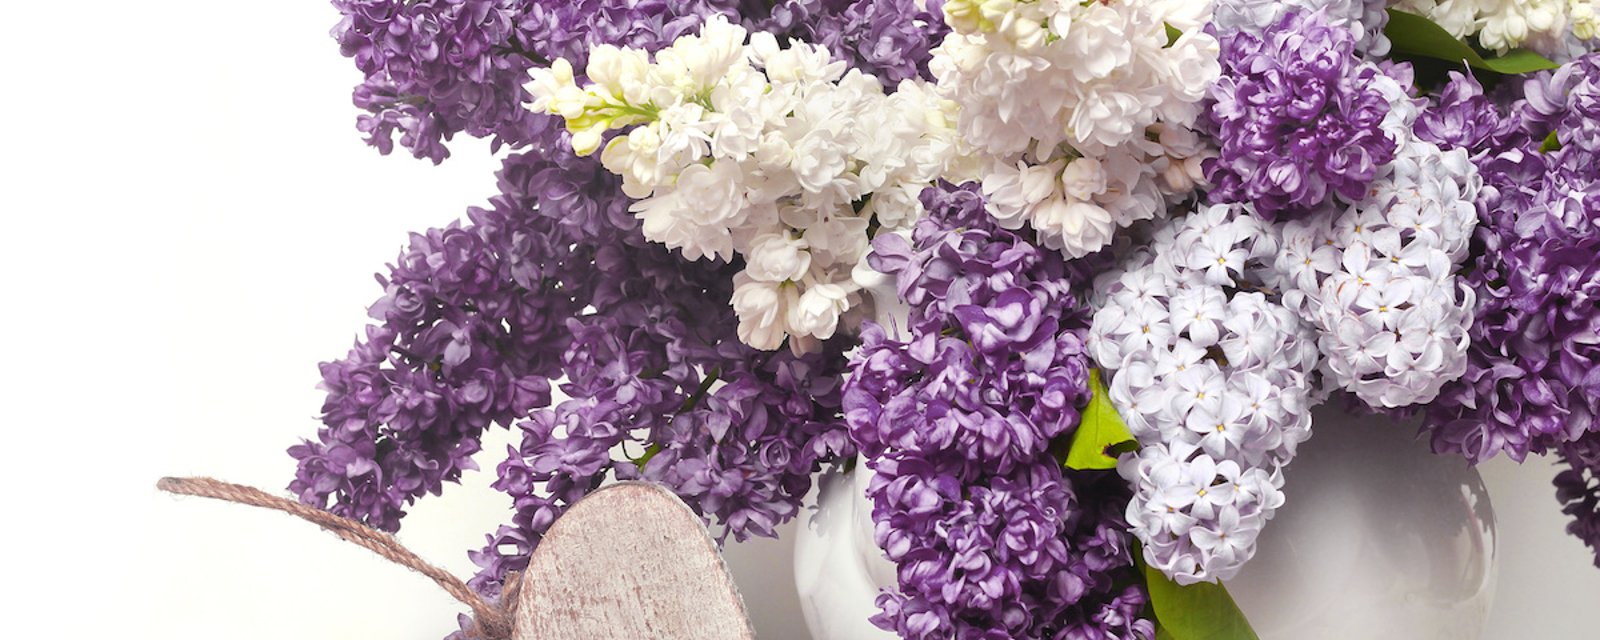 Comment empêcher les lilas de faner dans un vase